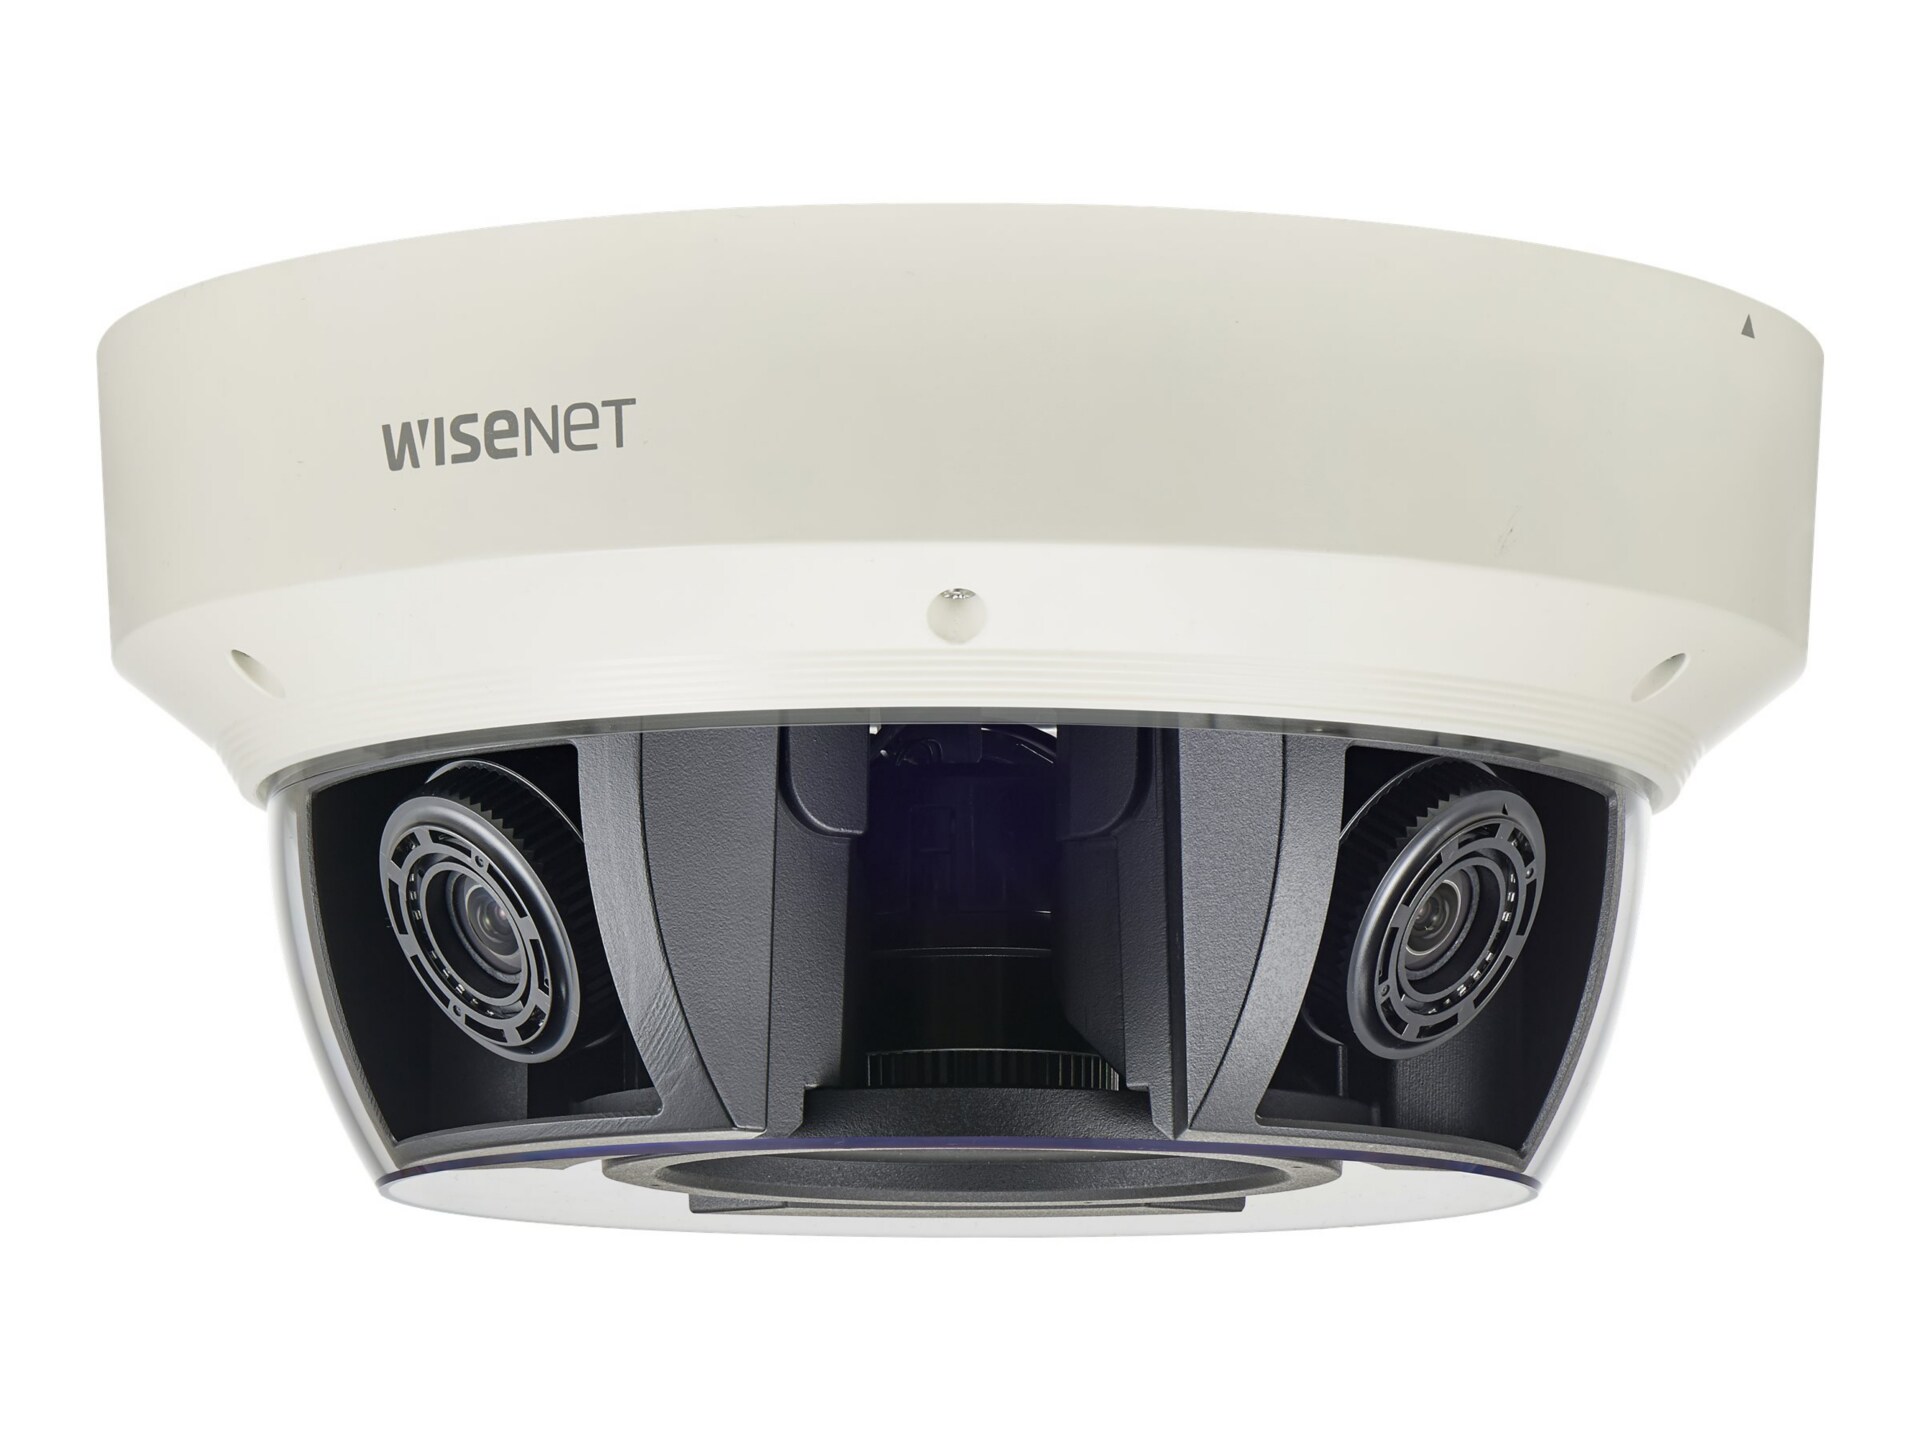 Samsung WiseNet P PNM-9081VQ - network surveillance camera